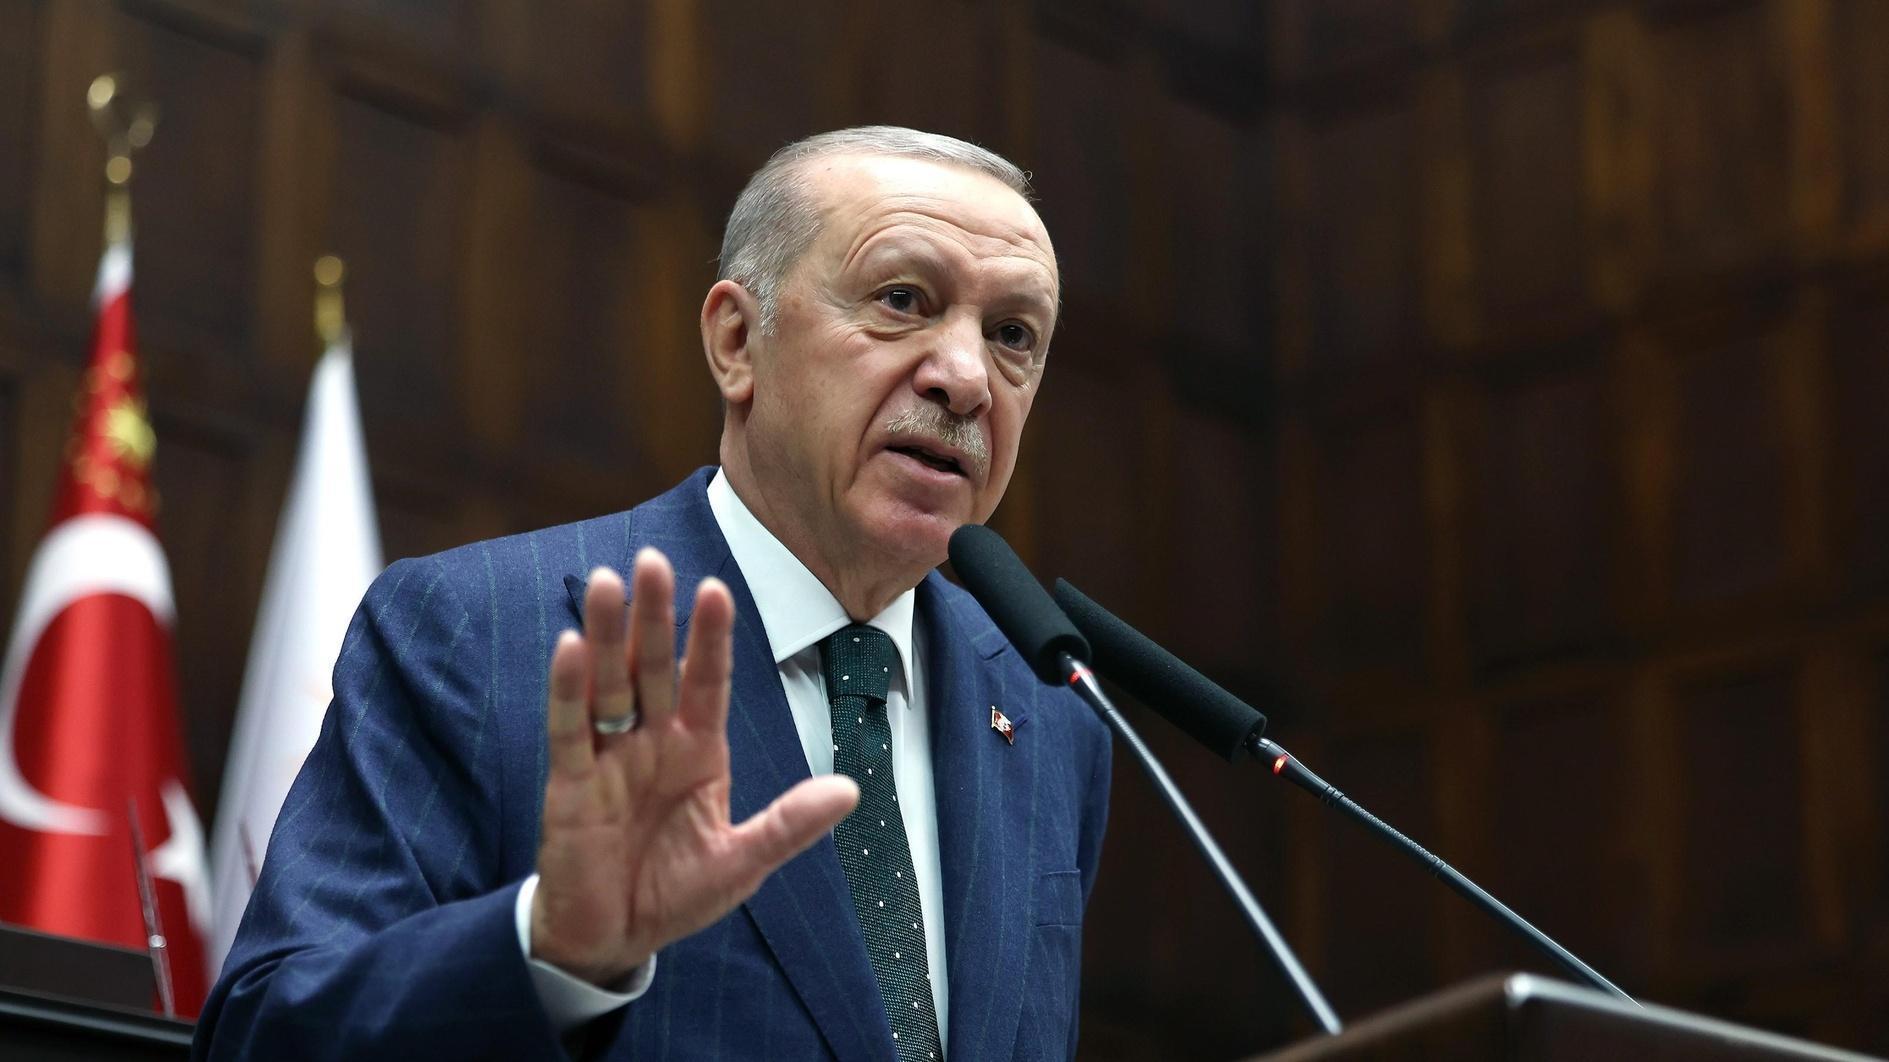 Erdoğan accuses UN, US, Europe of complicity in Gaza attacks